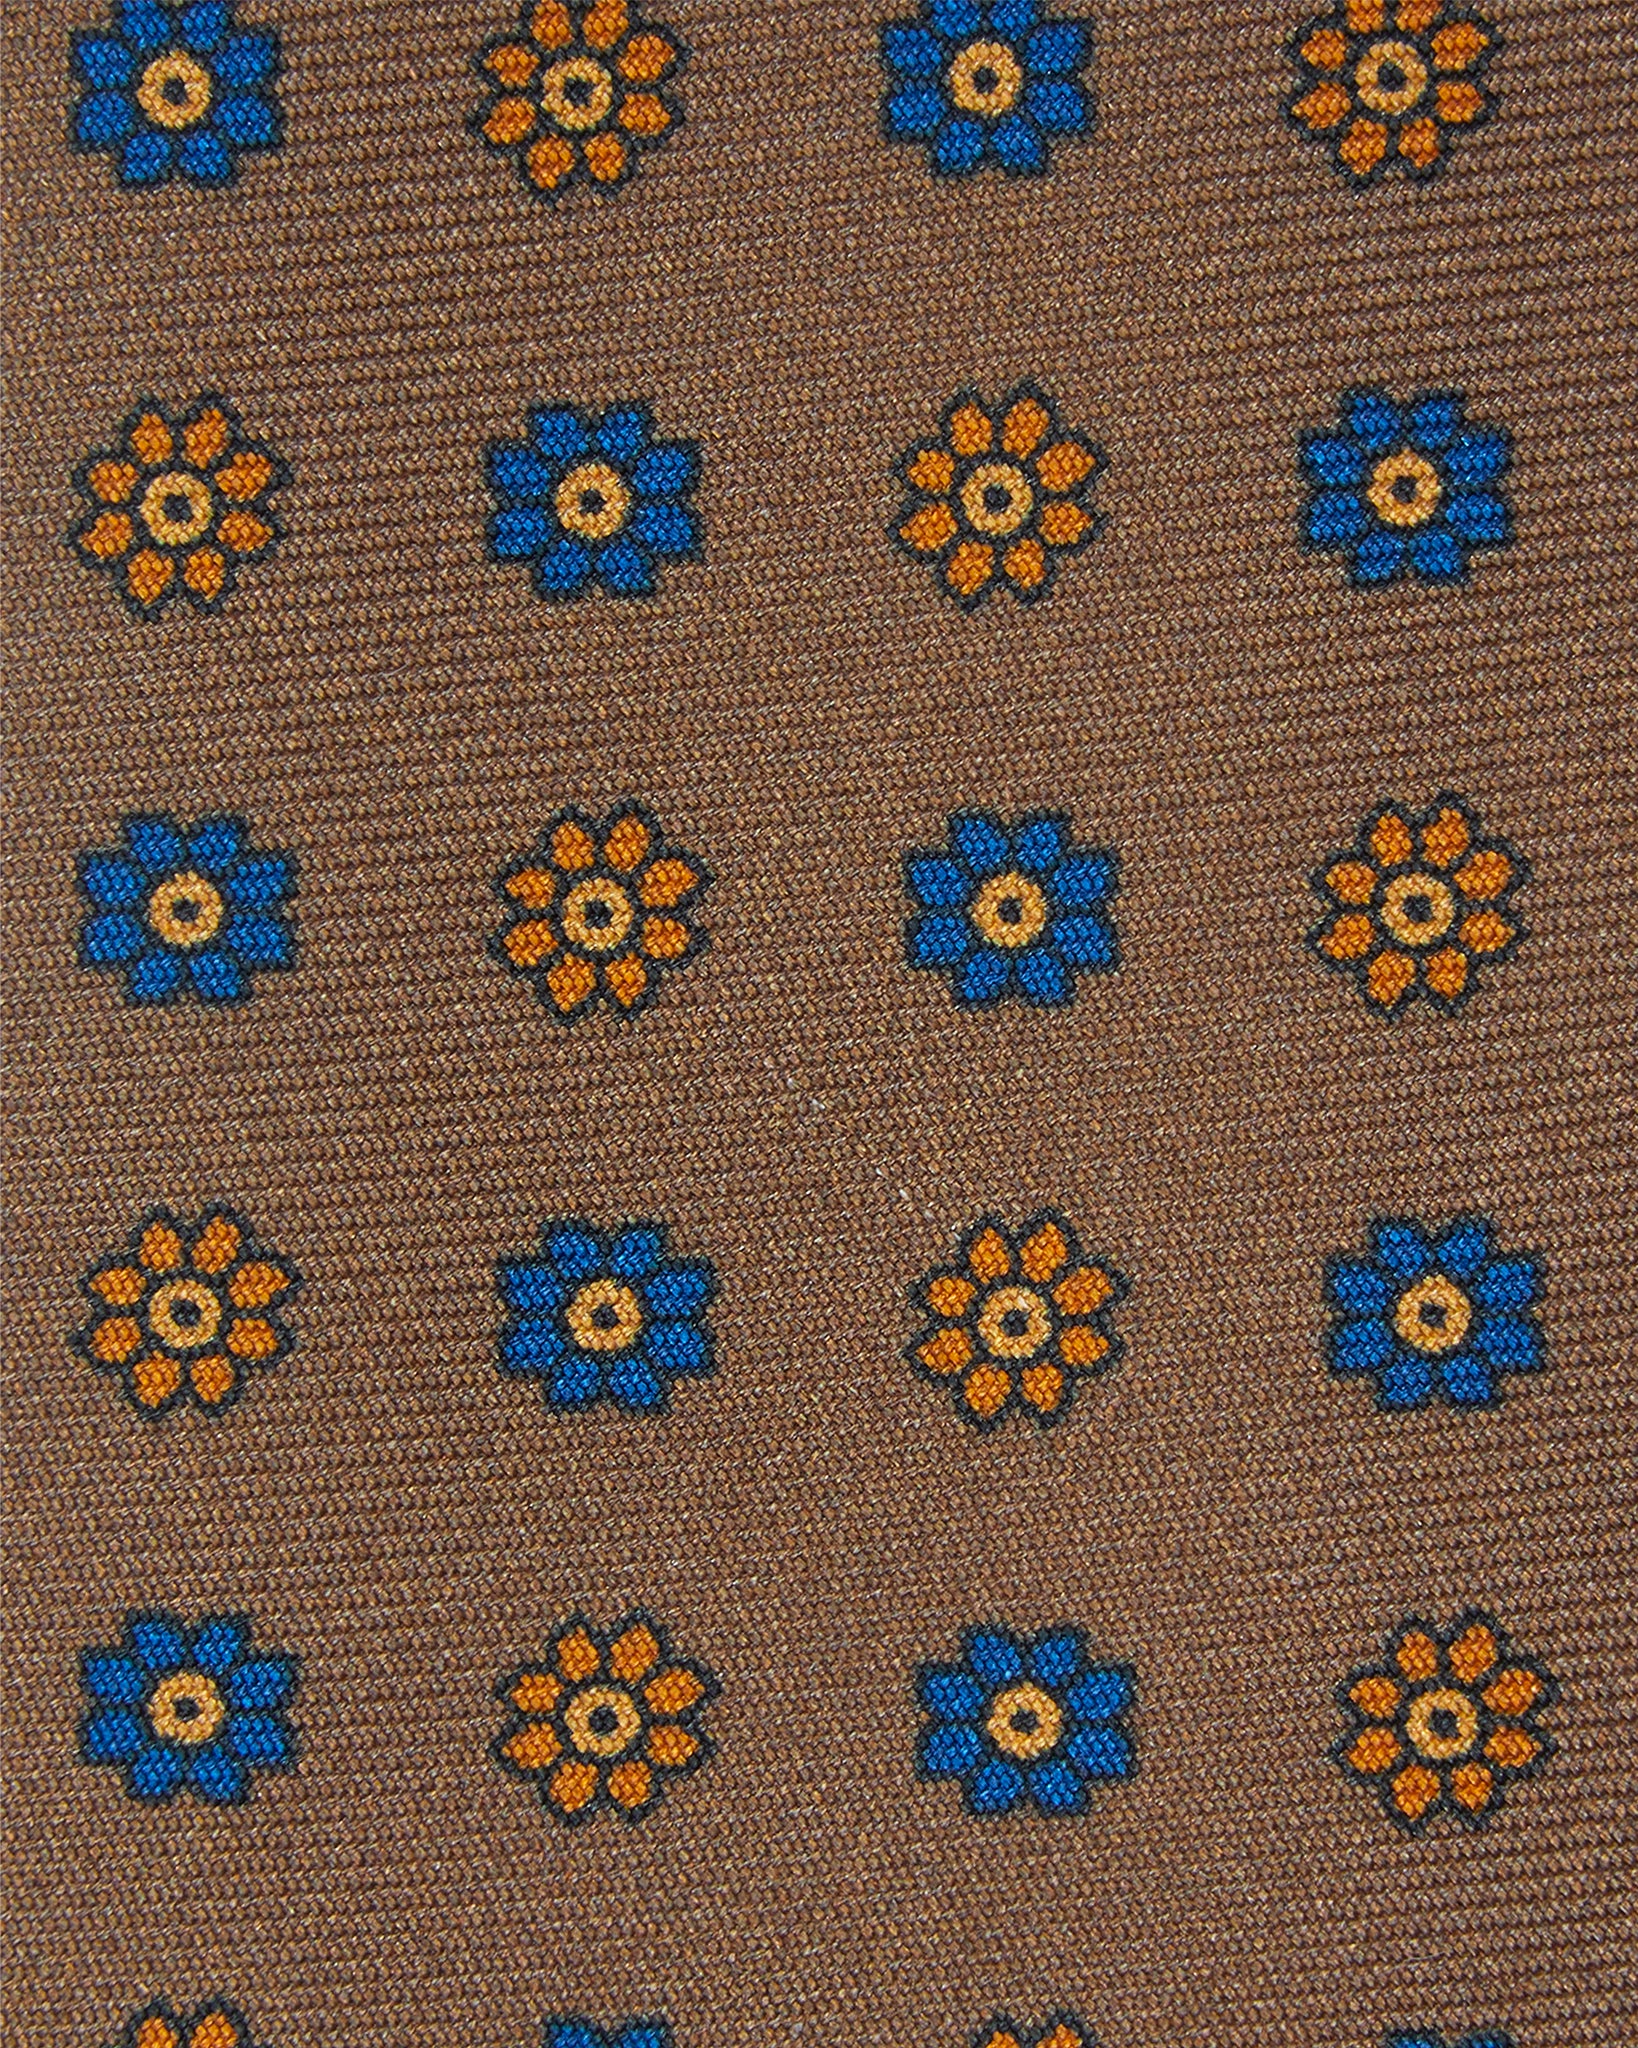 Silk Print Tie in Khaki/Orange/Blue Flower